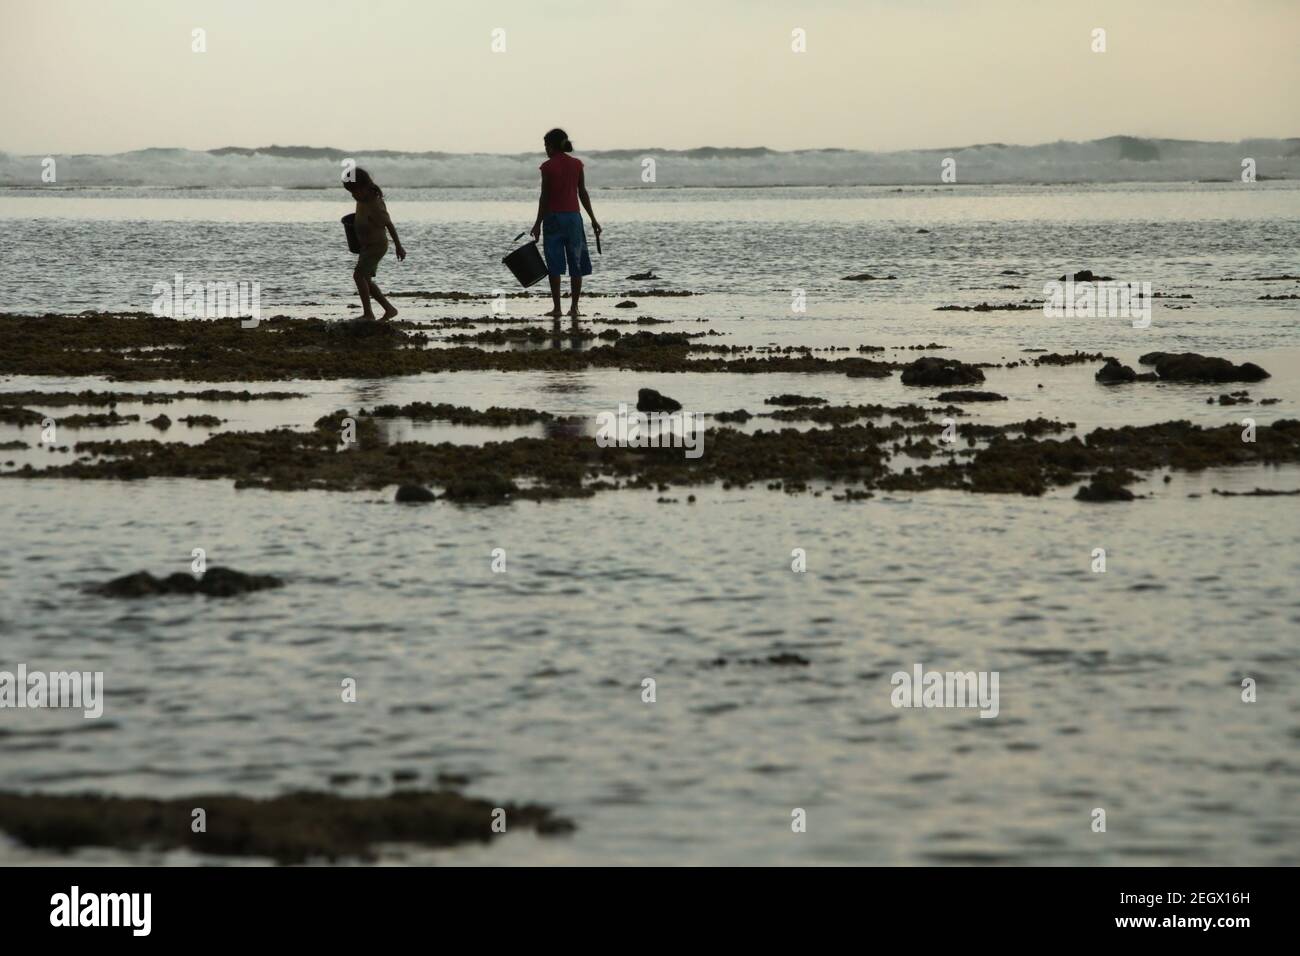 Eine junge Frau und ein Kind machten bei Ebbe einen Scherzschnitt, als sie am felsigen Strand spazieren gingen und Plastikeimer trugen, um Meerprodukte zu sammeln. Stockfoto